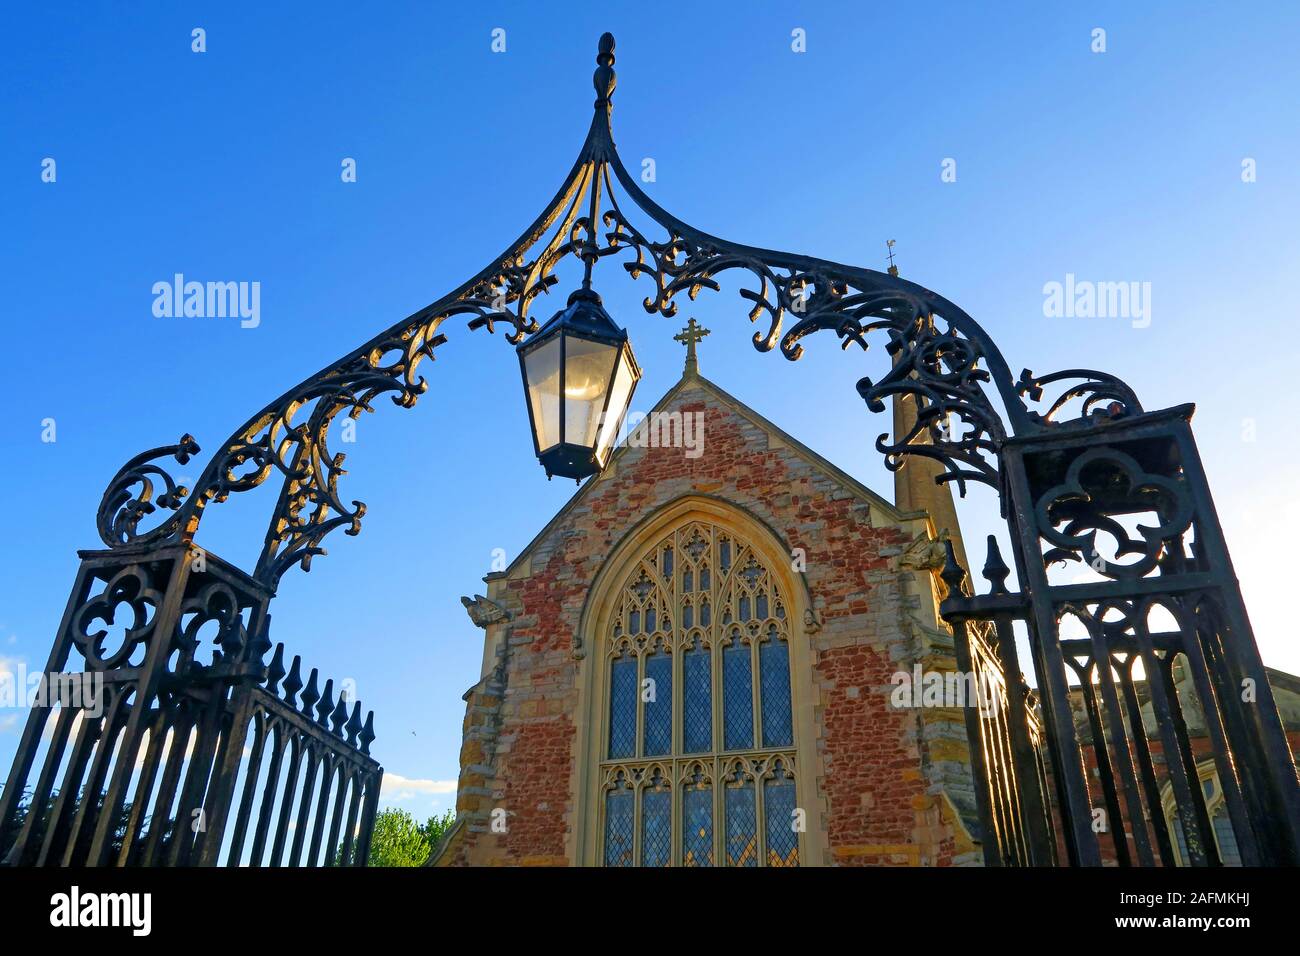 St Marys Church Gates, ferronnerie et lampe au coucher du soleil, Bridgwater, Somerset, Angleterre, Royaume-Uni Banque D'Images